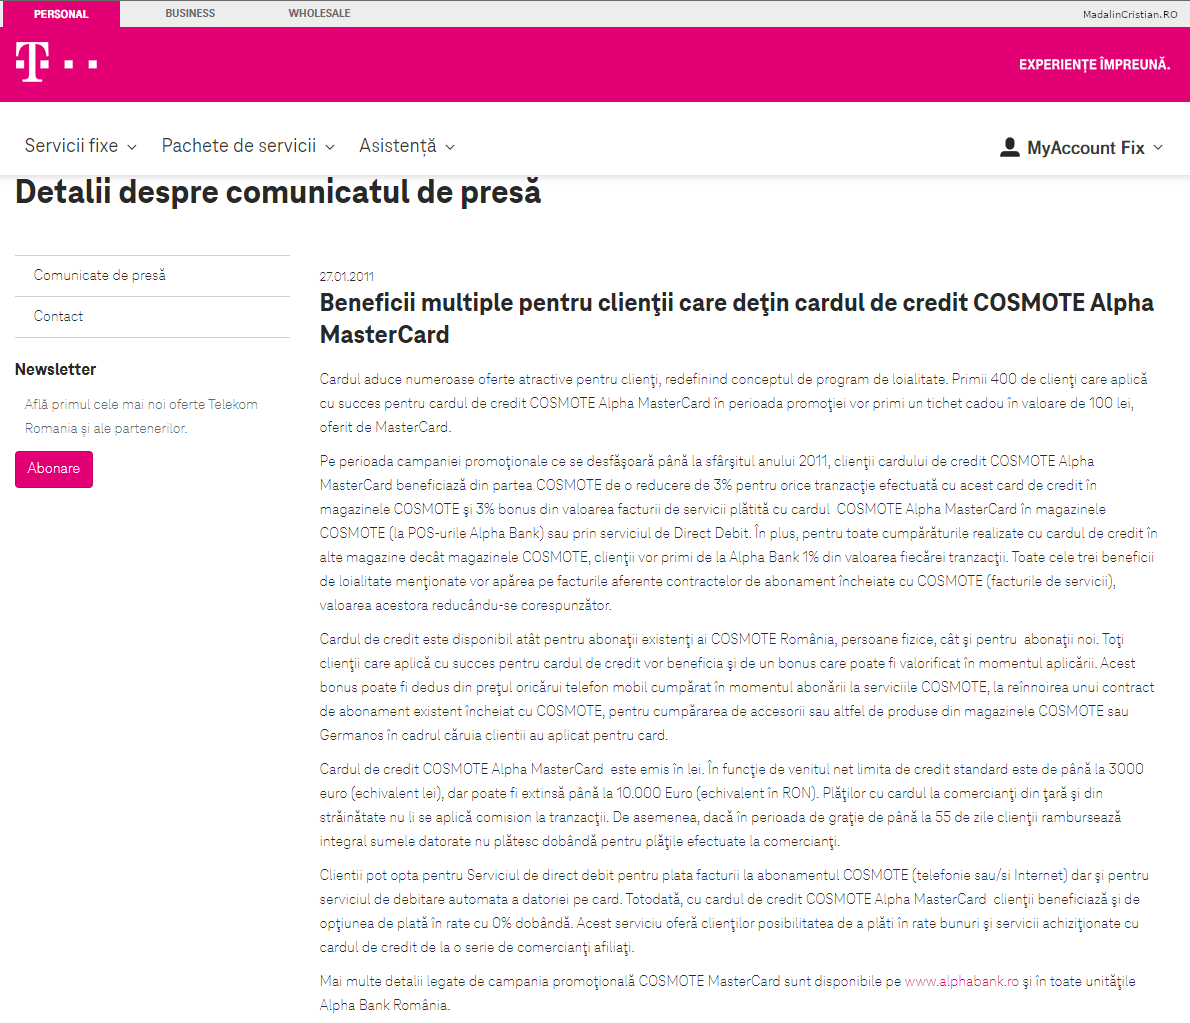 Comunicat de presa Telekom 27.01.2011 Beneficii multiple pentru clientii care detin cardul de credit COSMOTE Alpha MasterCard